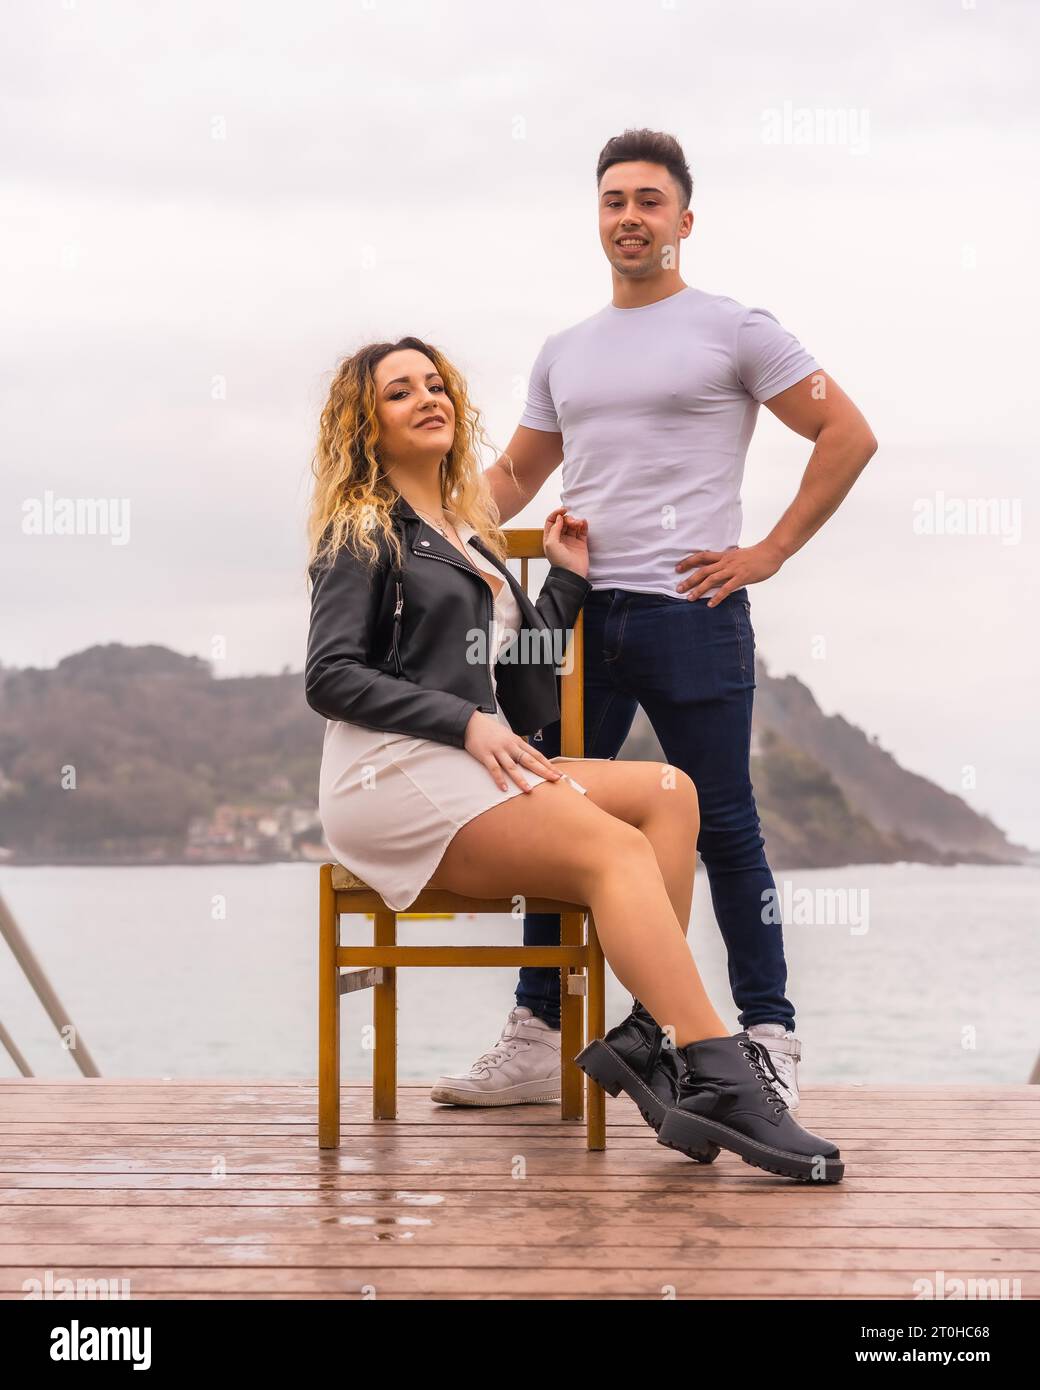 Modische Pose eines kaukasischen Paares im Urlaub am Meer. Junge Frau sitzt und Junge neben ihr Stockfoto